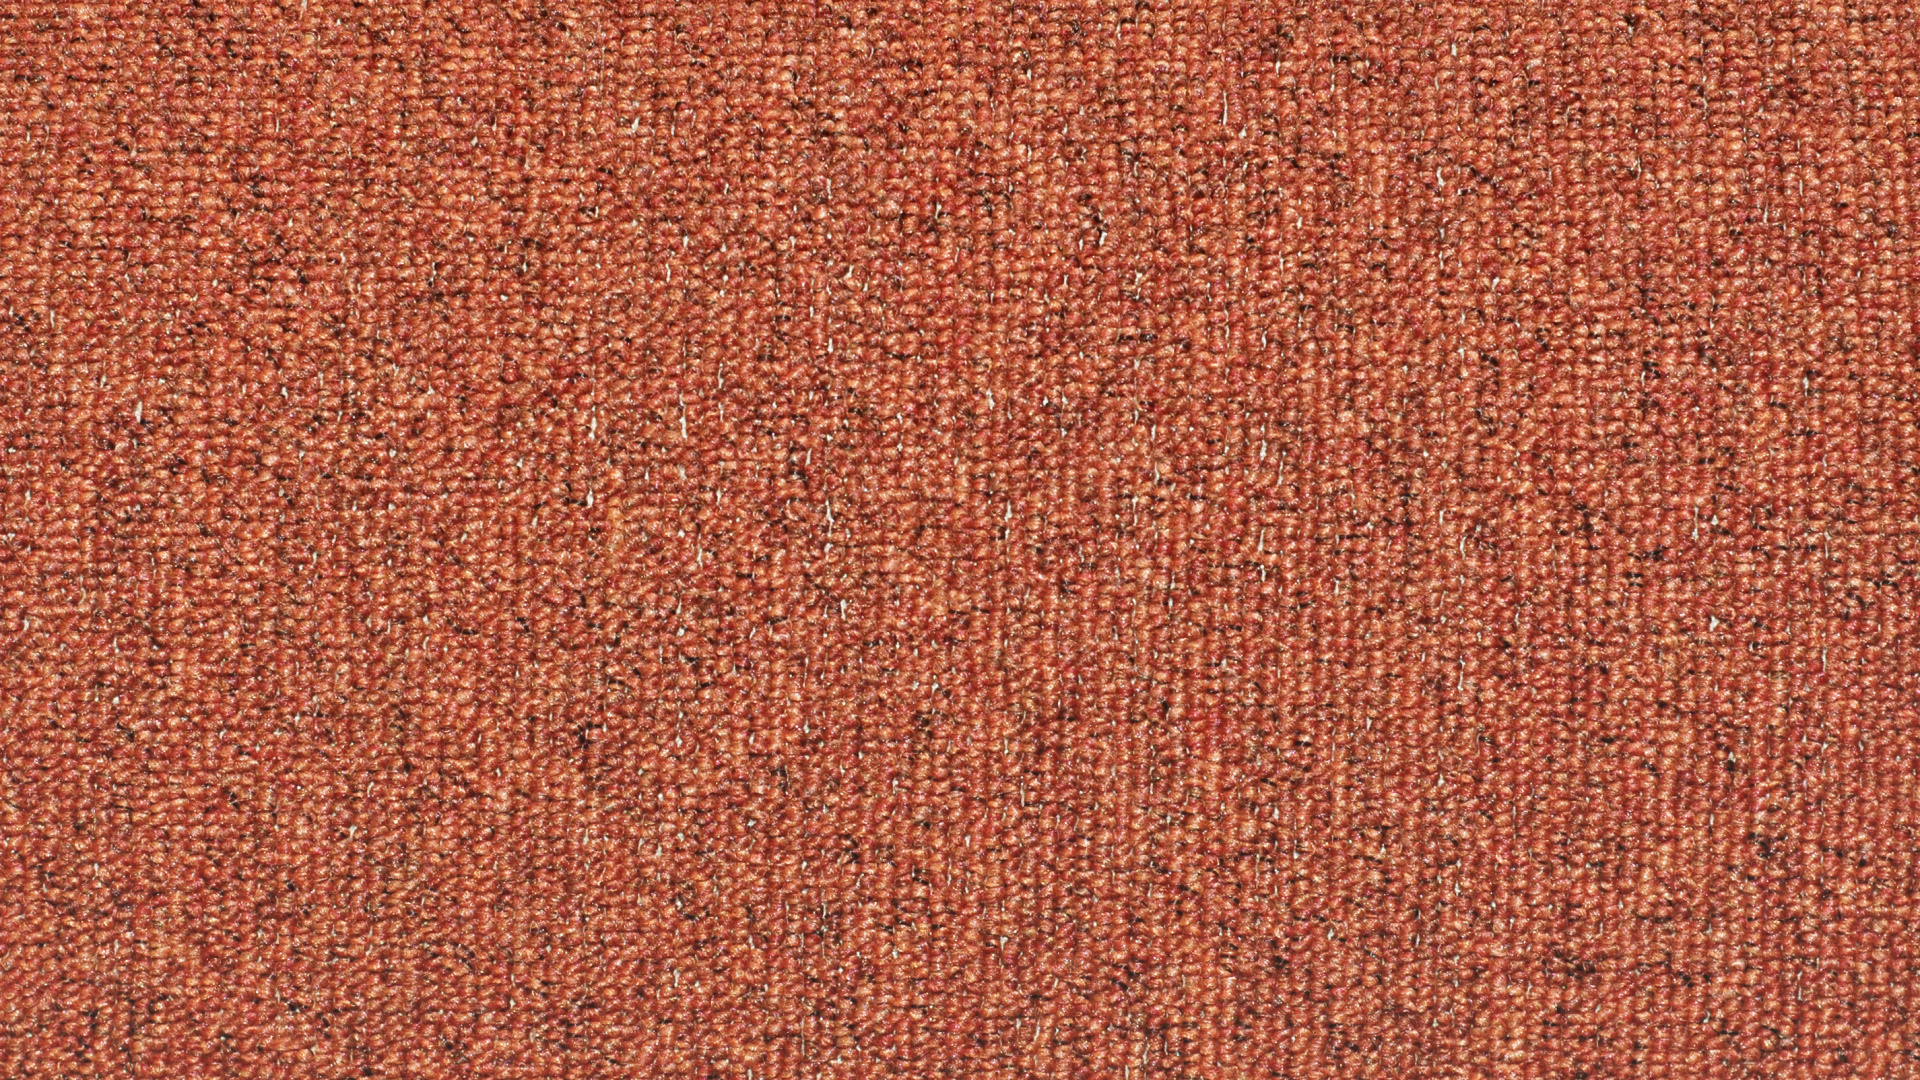 Textil Marrón Con Línea Blanca. Wallpaper in 1920x1080 Resolution